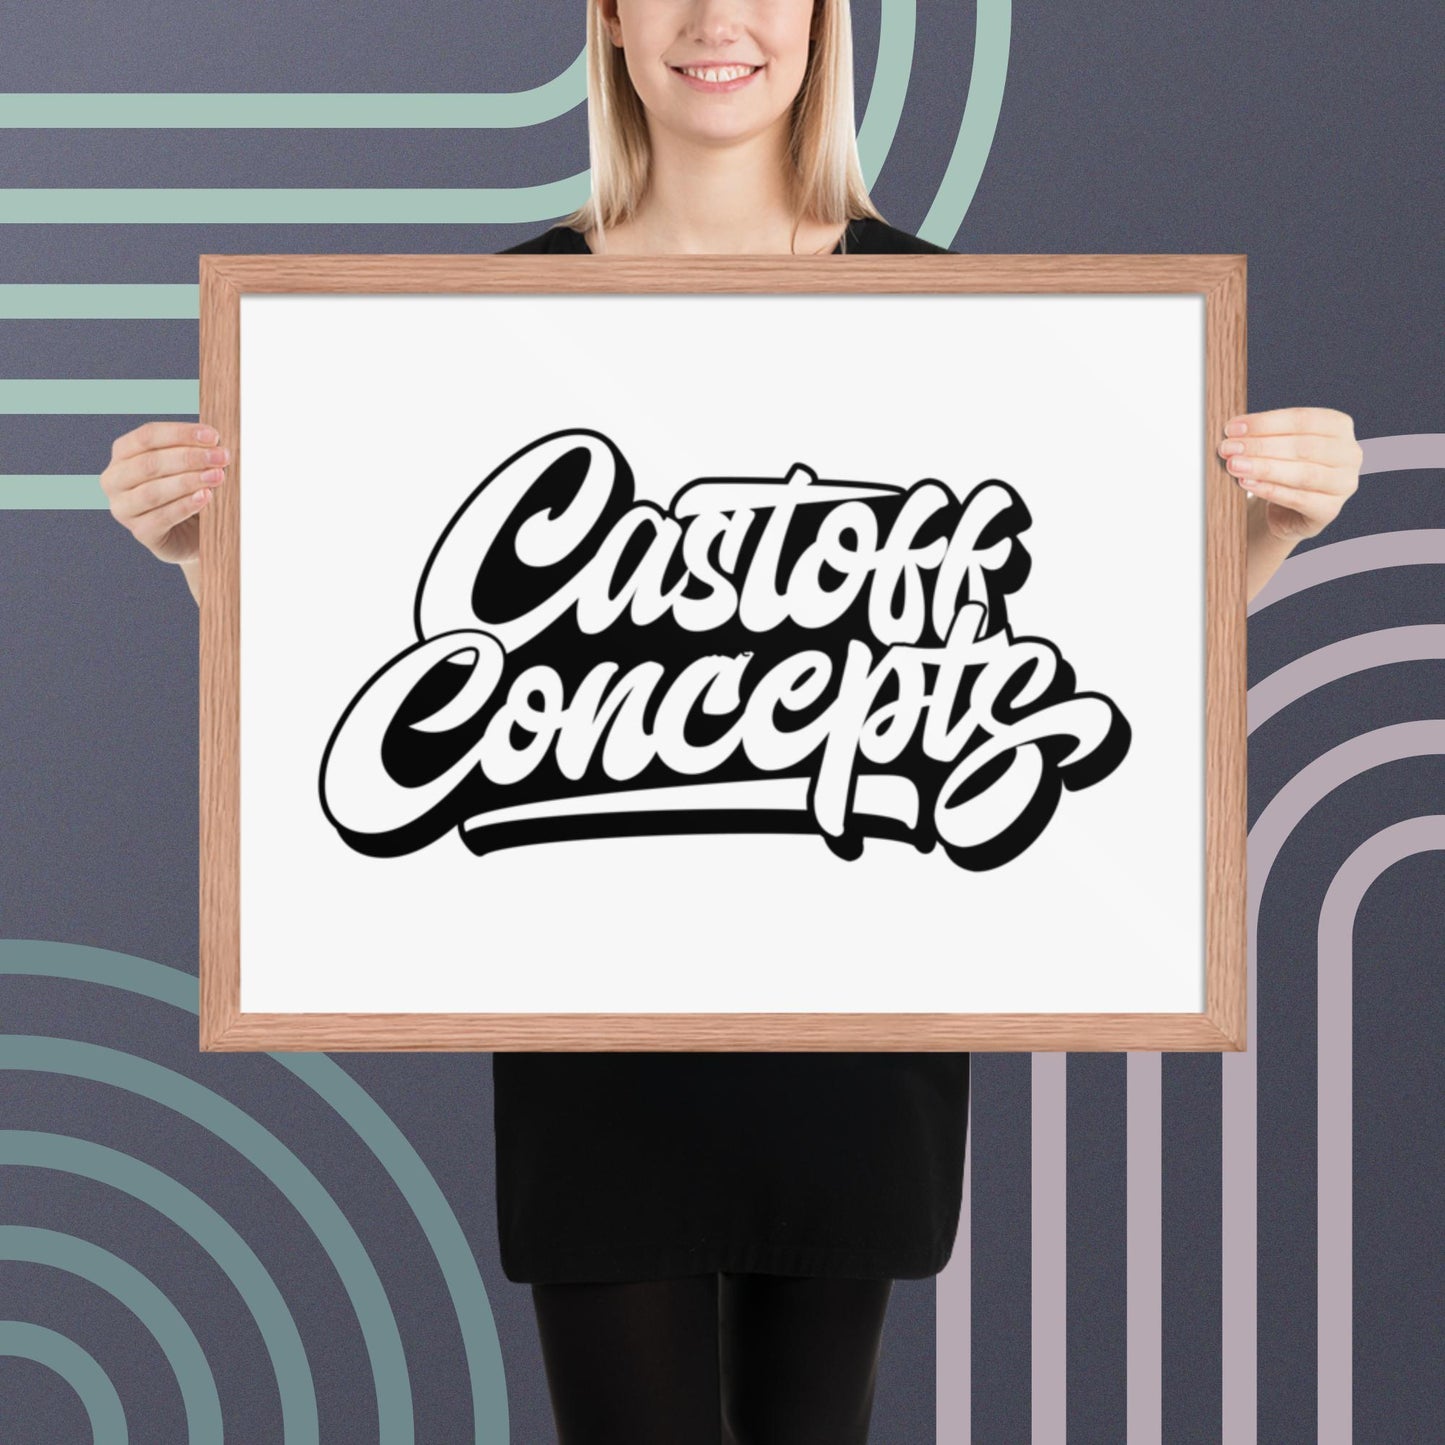 Castoff Concepts Framed Poster